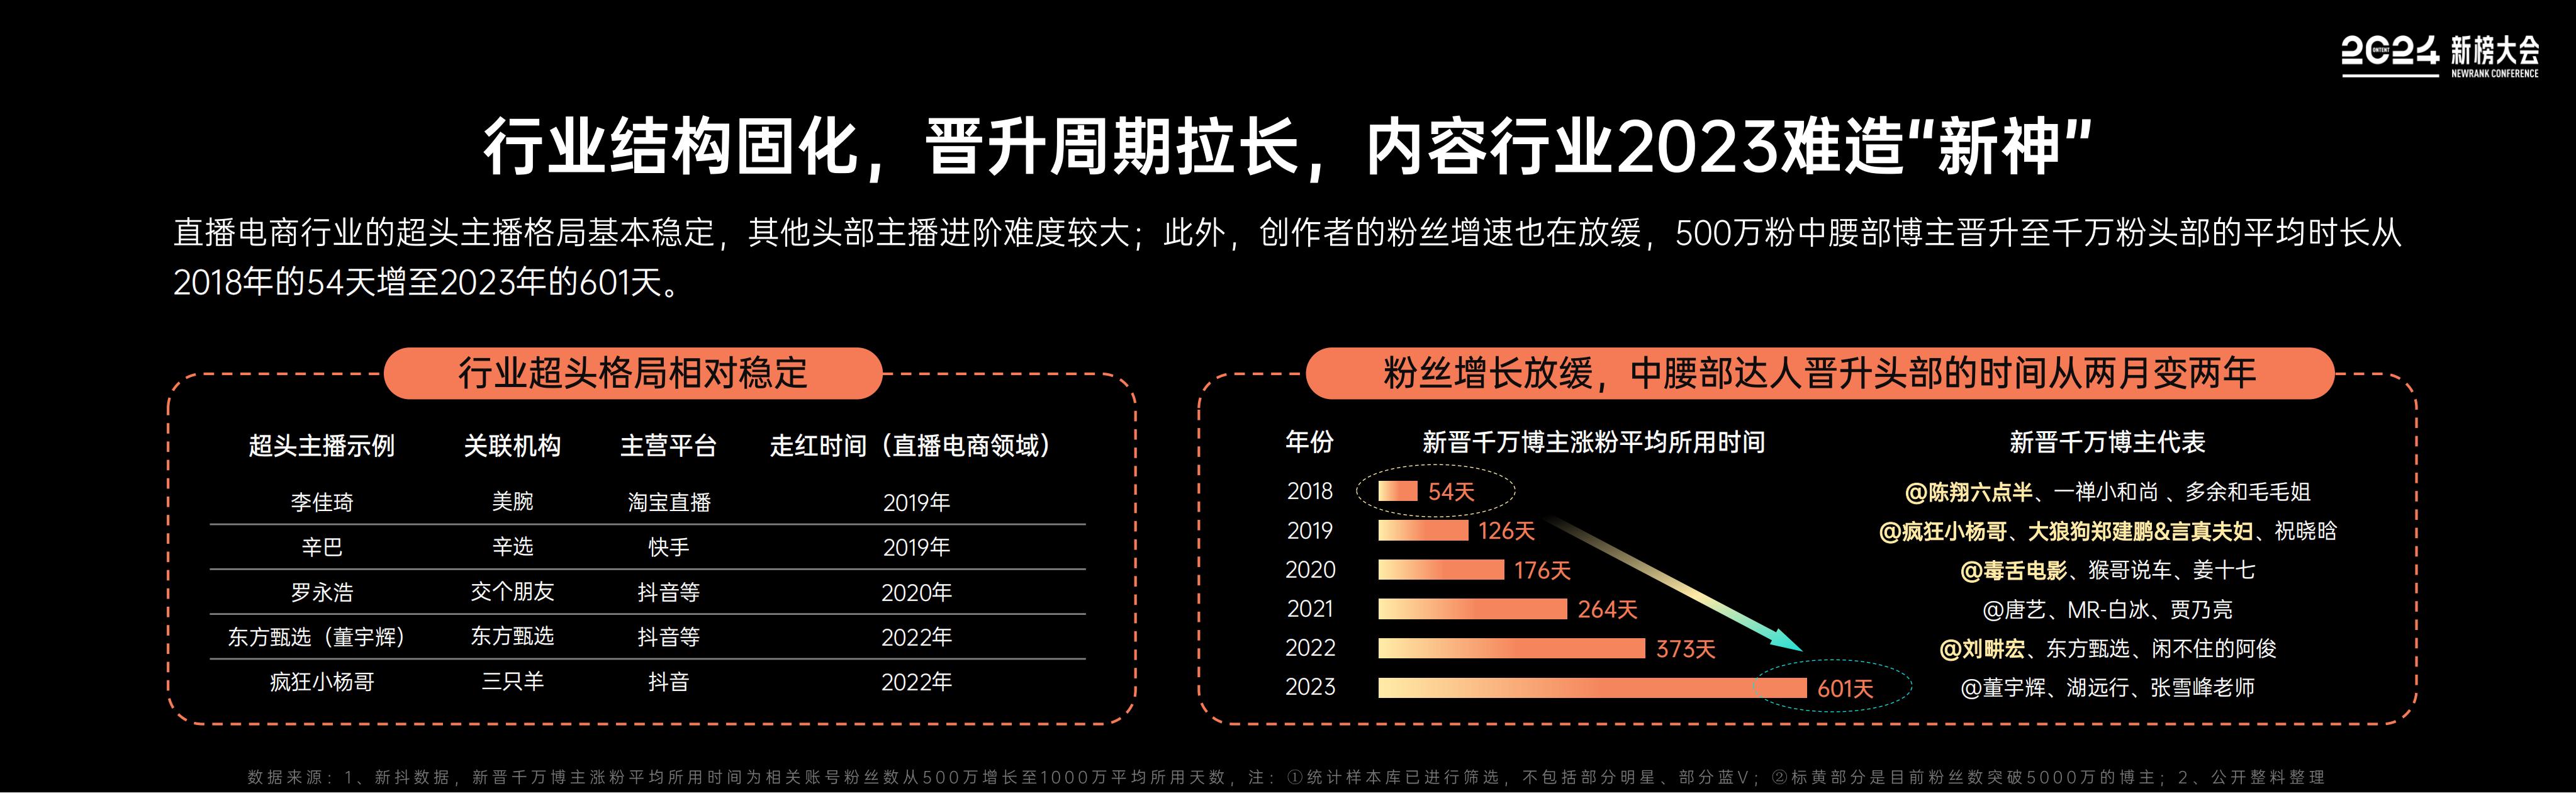 【新榜】2024内容产业年度报告_06.jpg